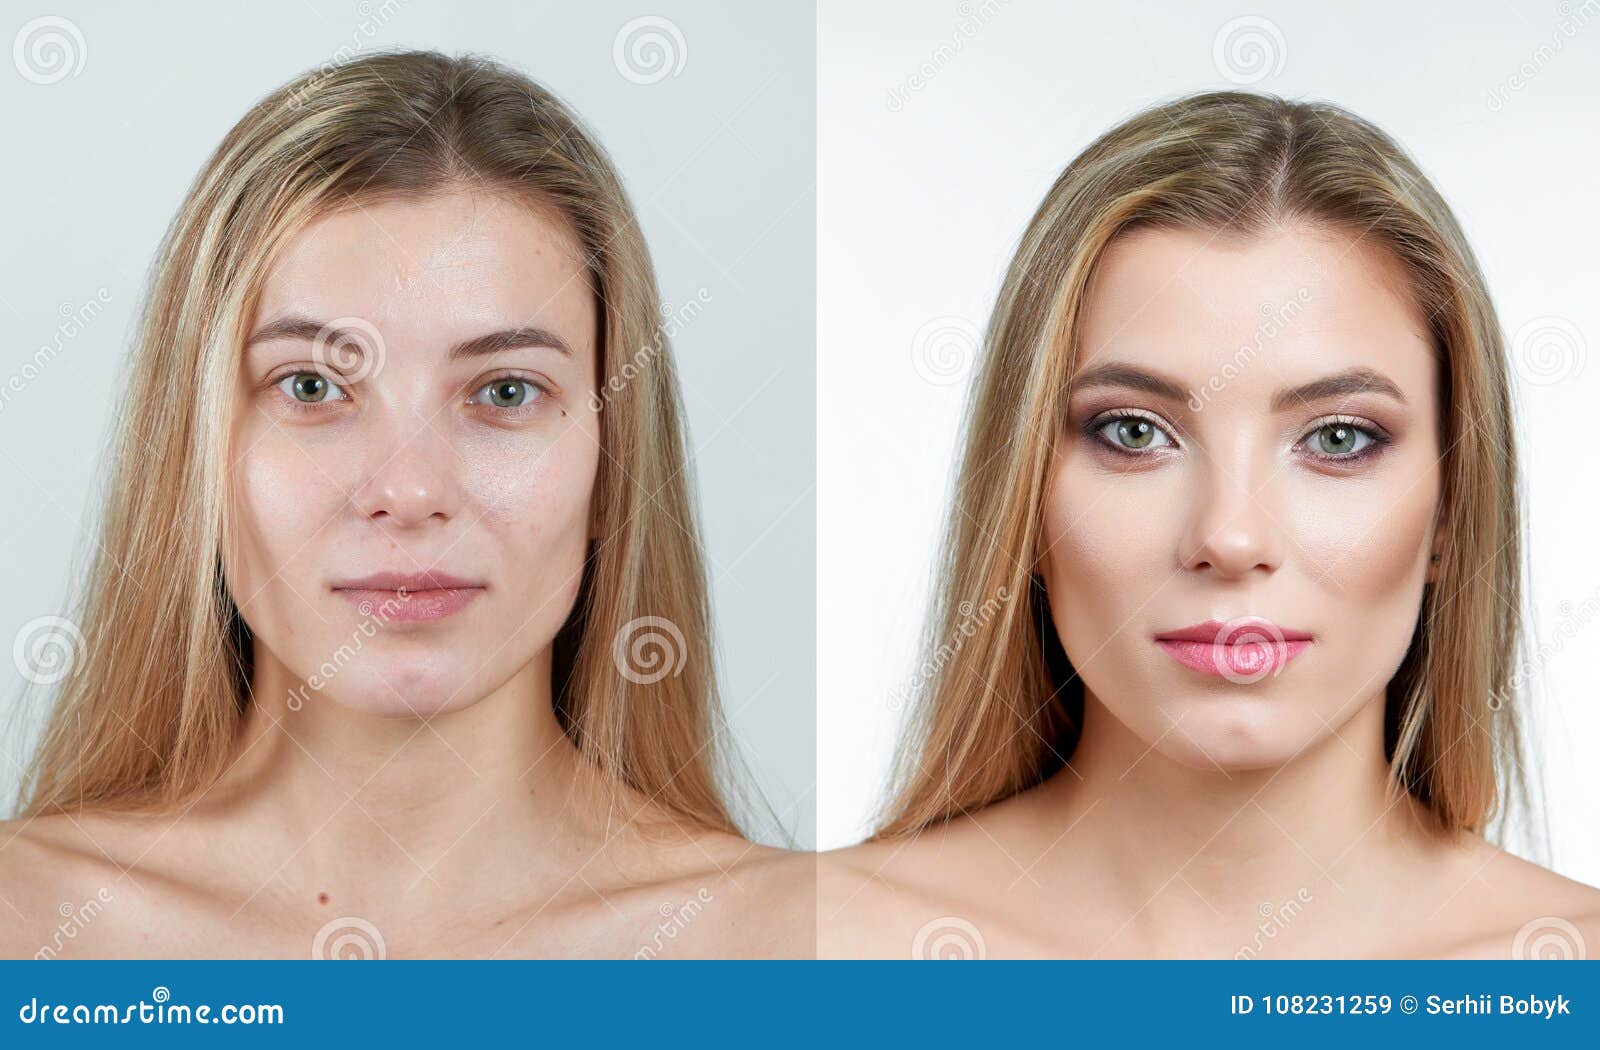 Girl without makeup